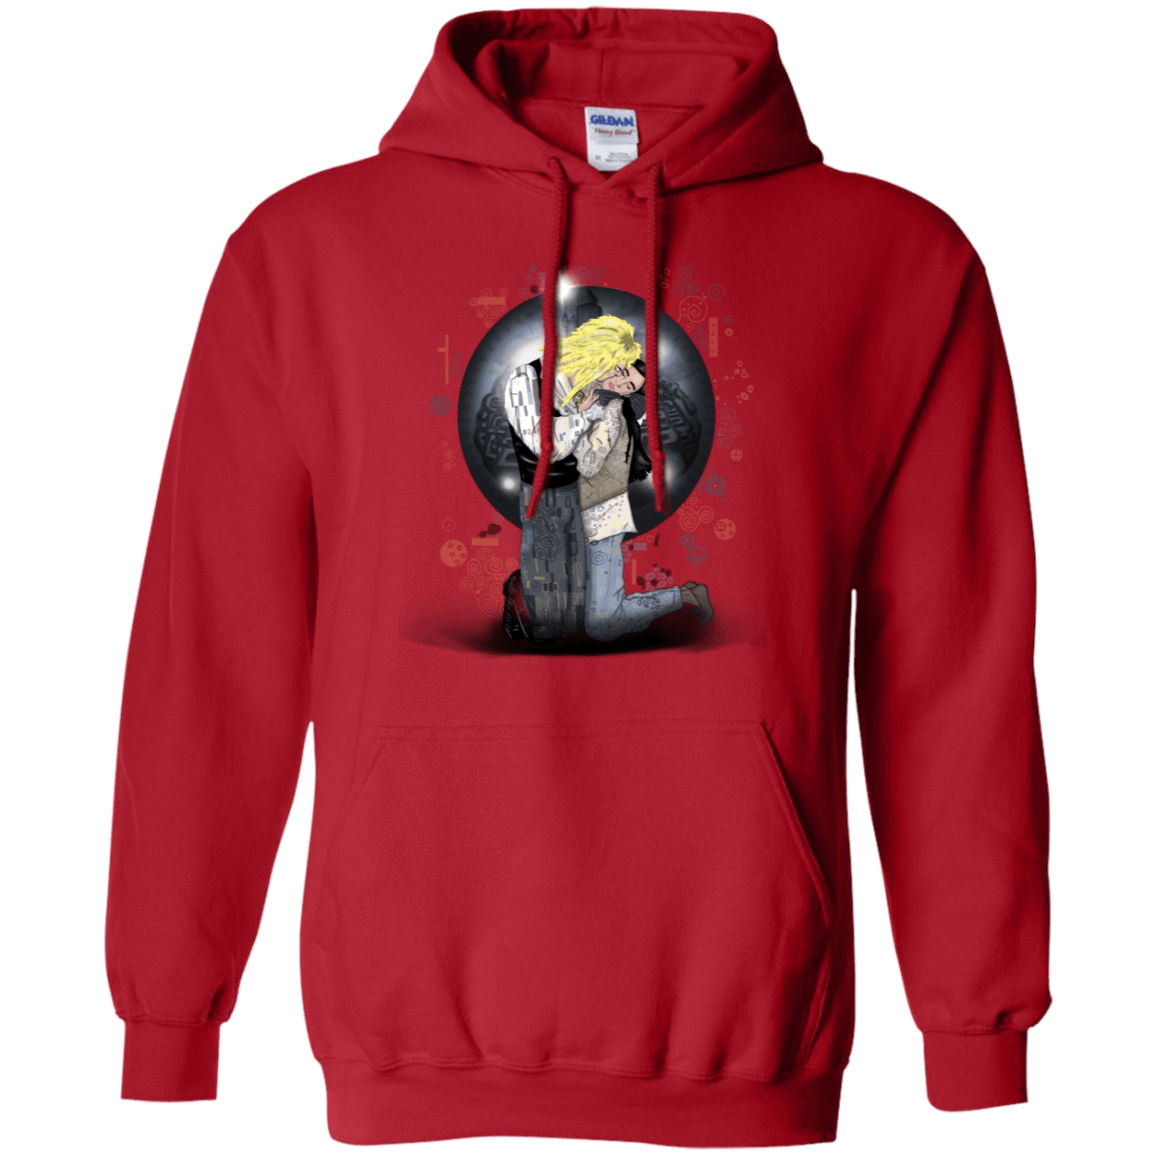 Sweatshirts Red / S Klimt Jareth Pullover Hoodie